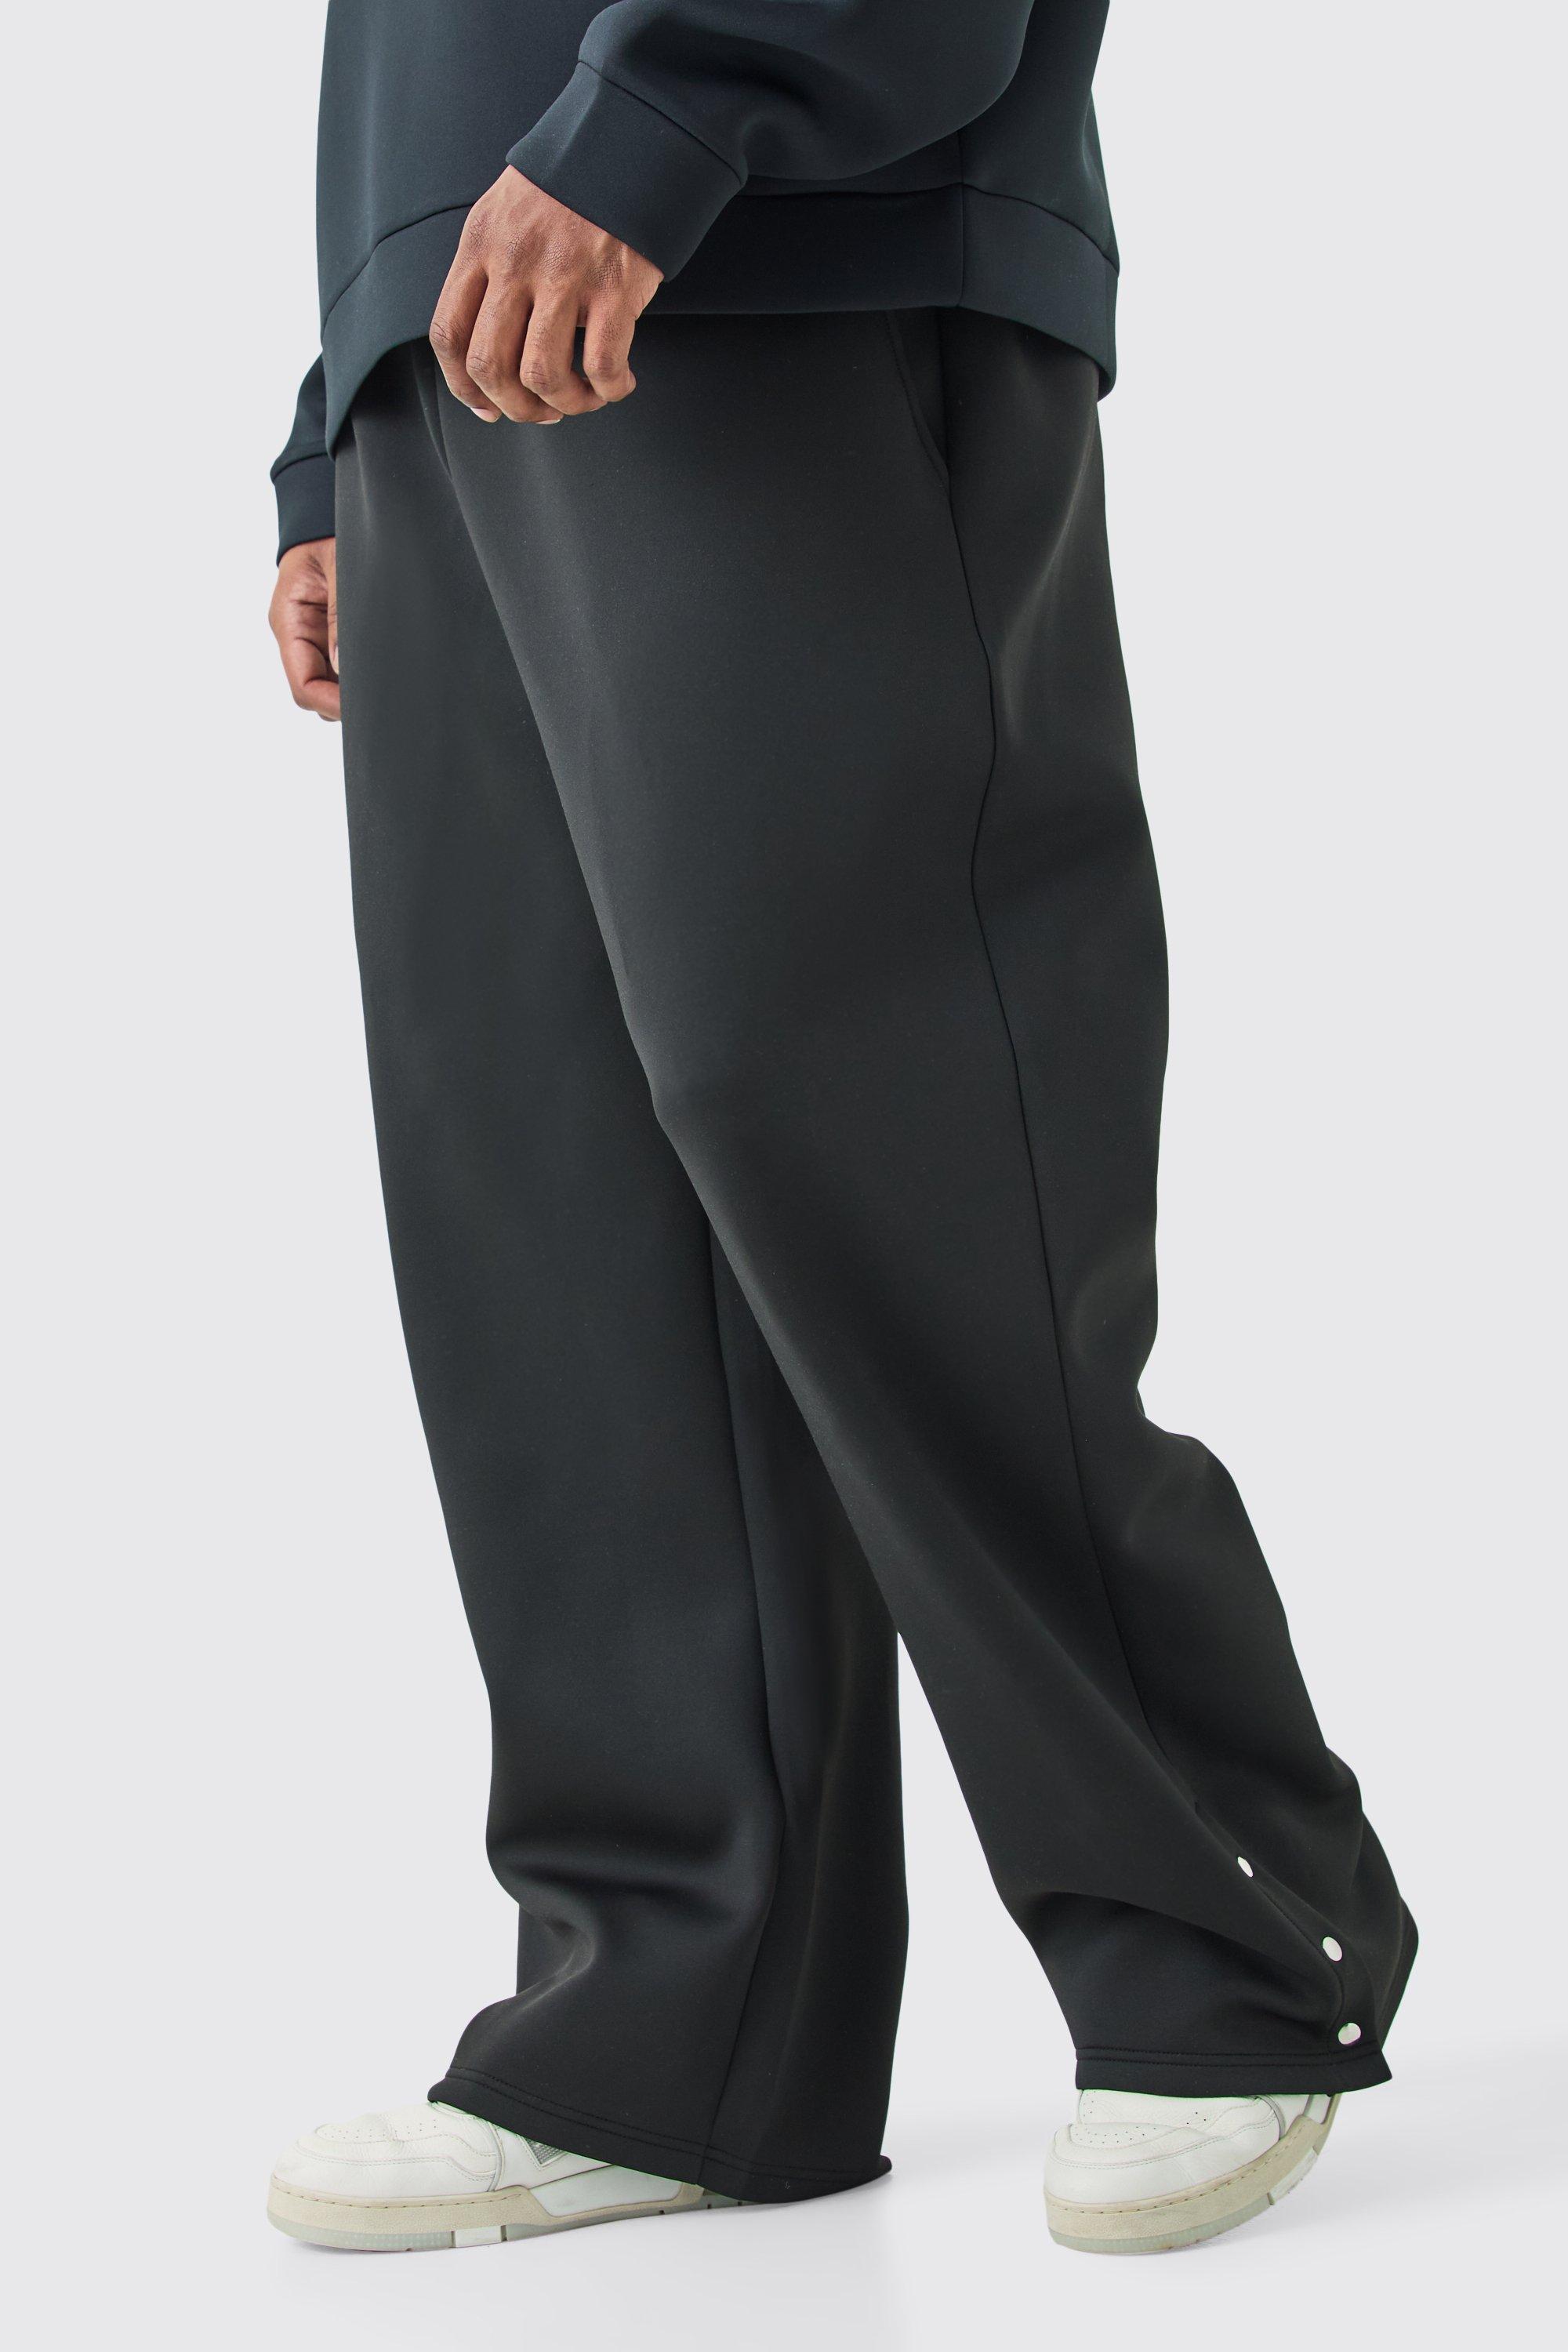 Image of Pantaloni tuta Plus Size dritti in Scuba con bottoni a pressione sul fondo, Nero